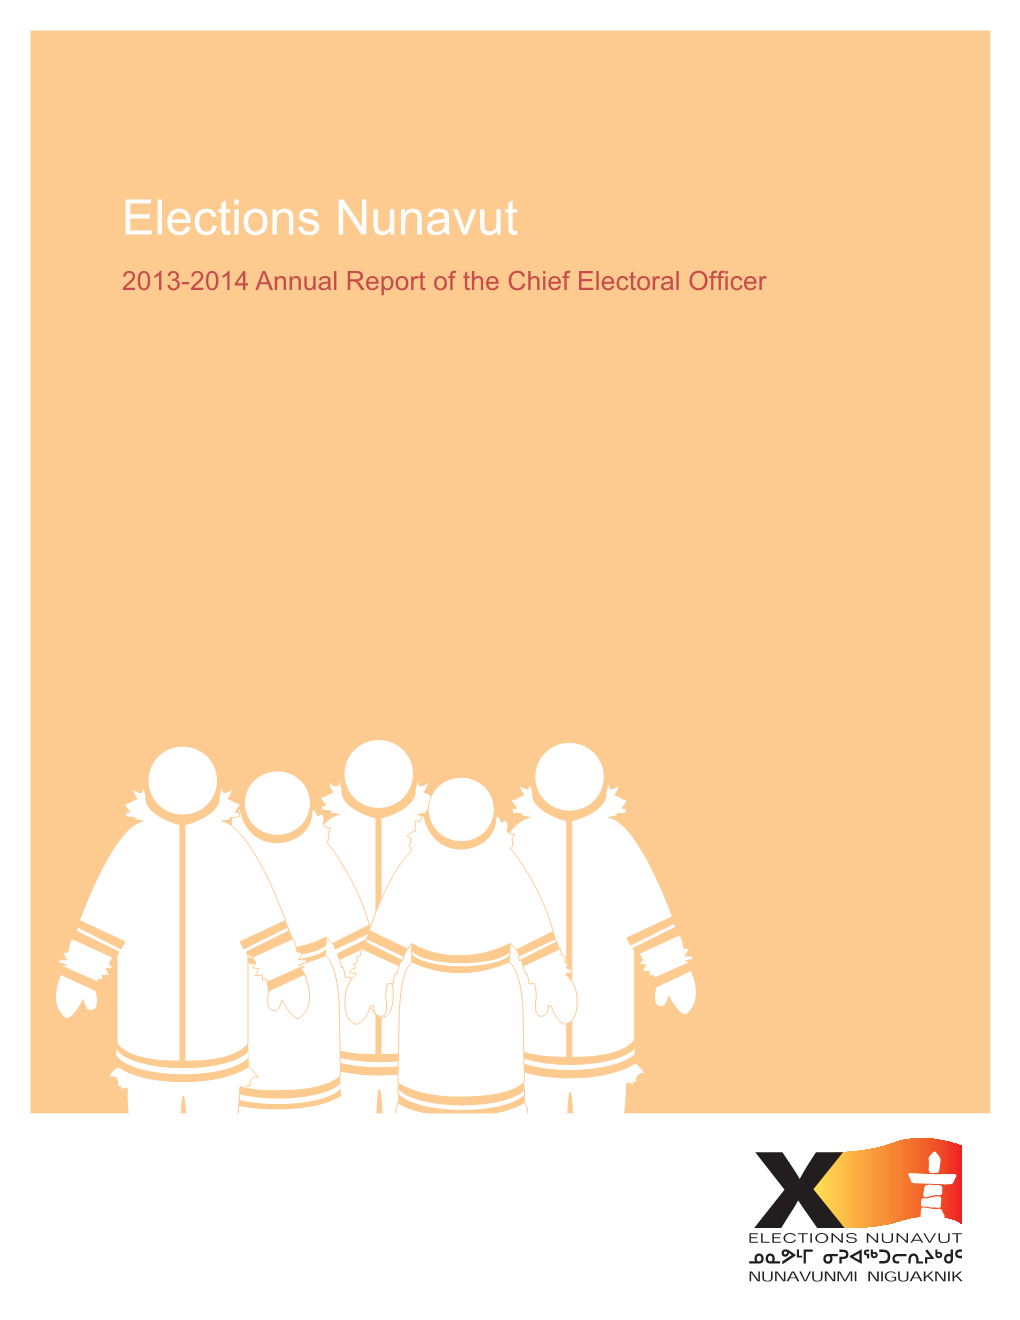 Elections Nunavut Elections Nunavut